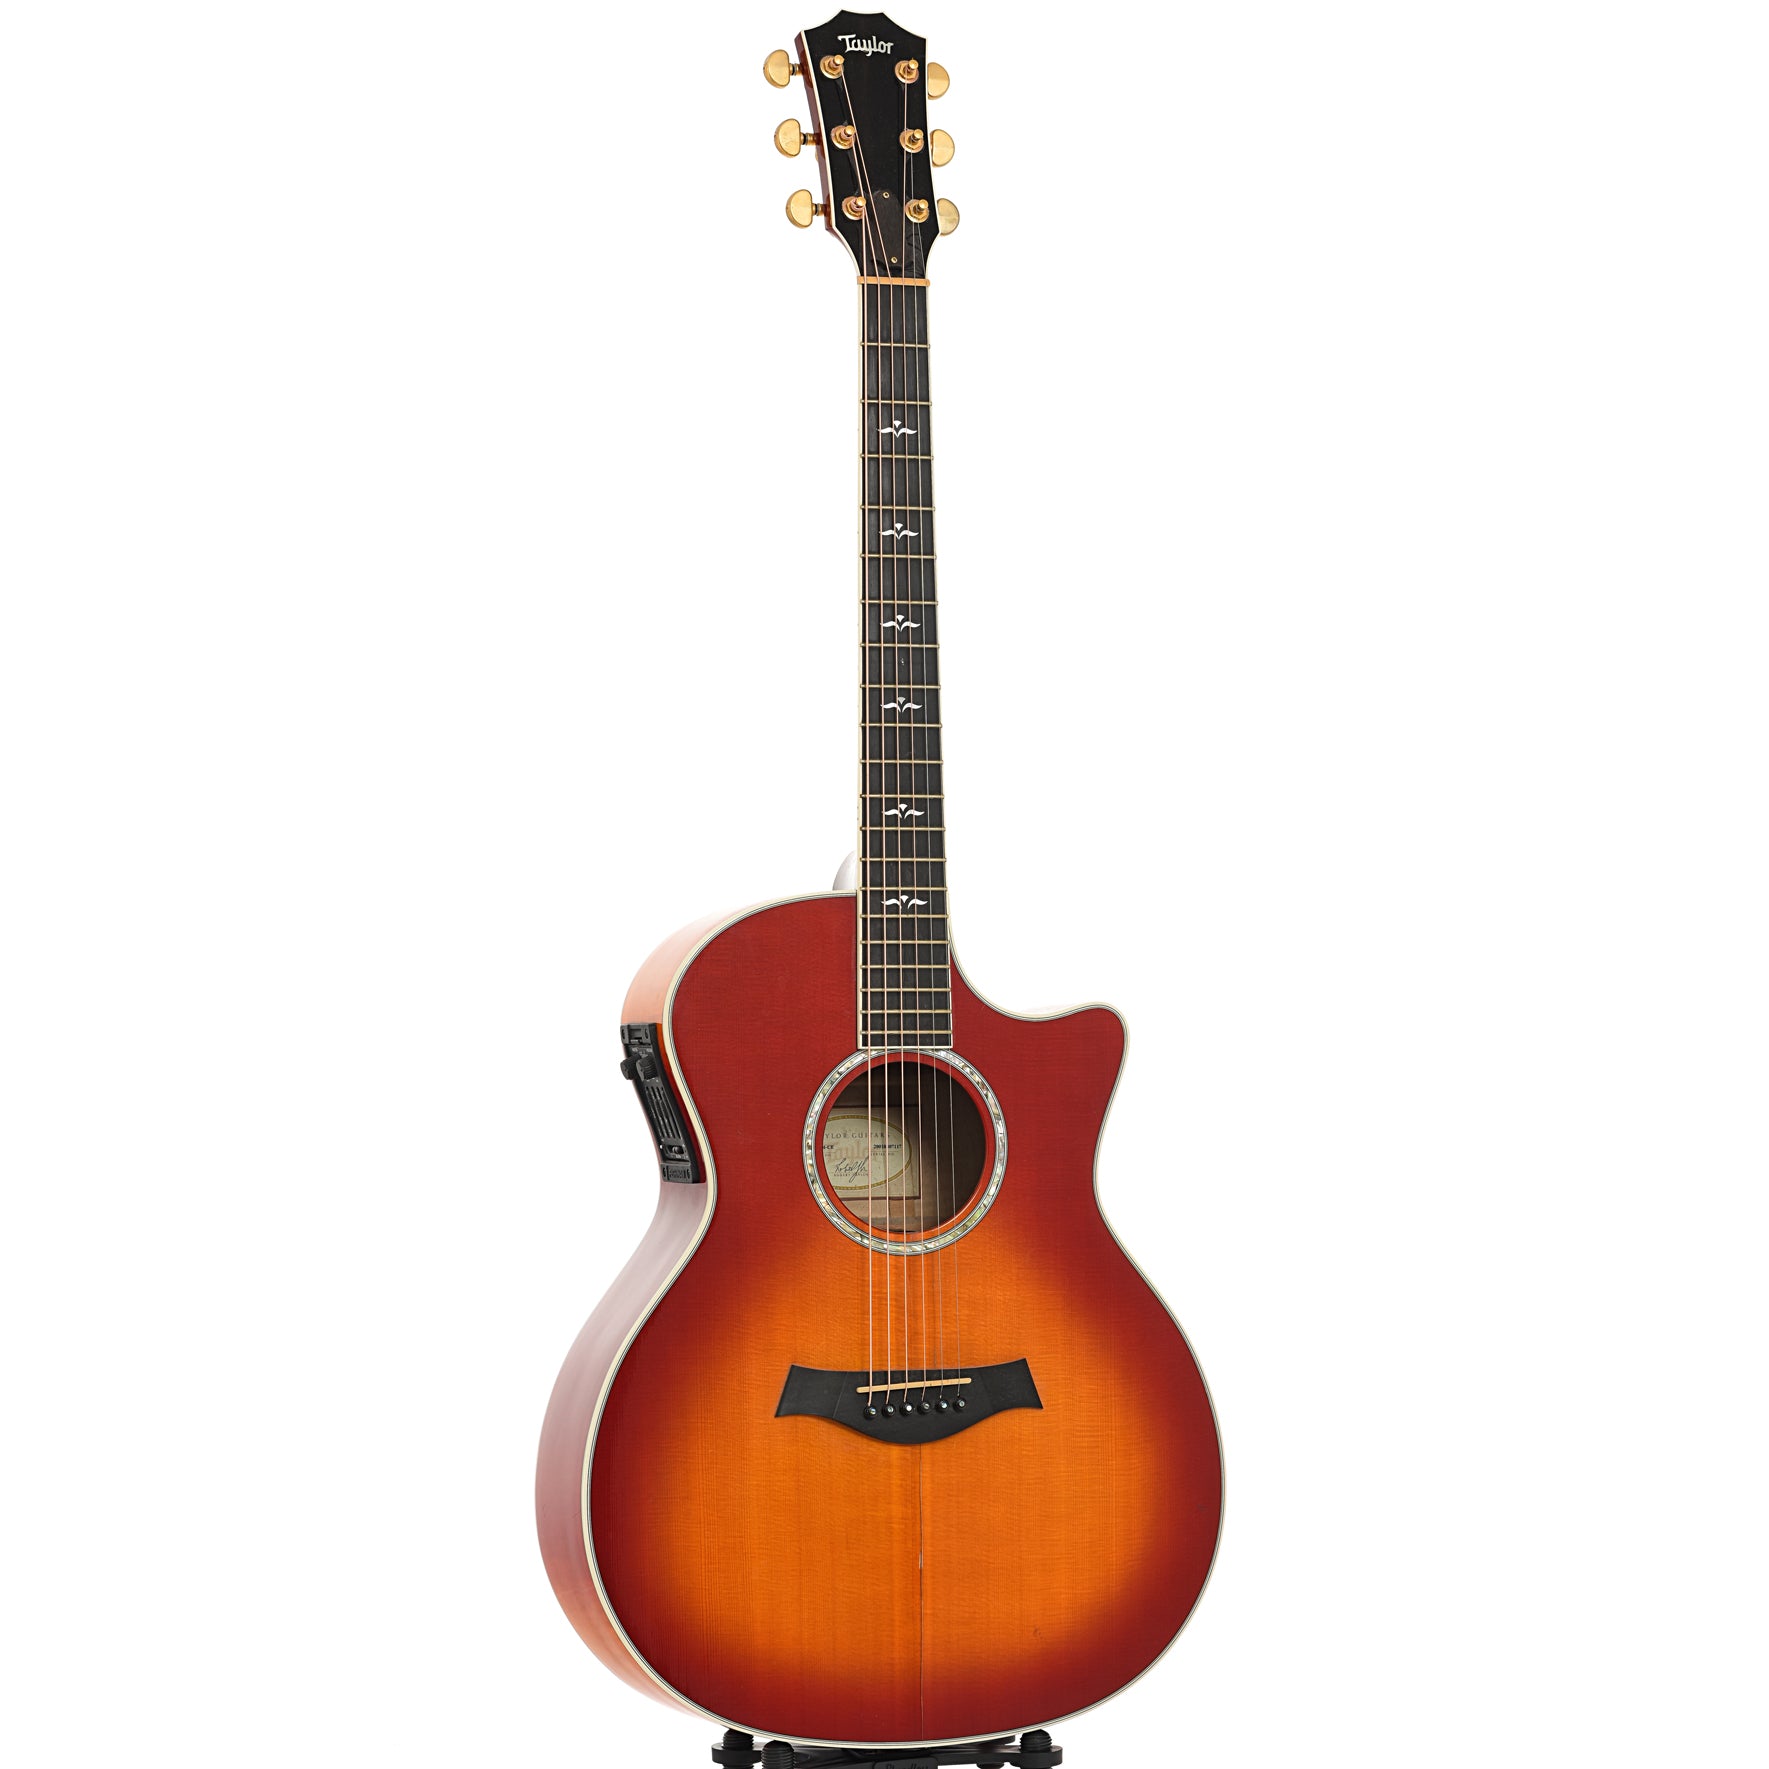 Taylor 614ce Cherry Sunburst Acoustic Electric Guitar (2001 